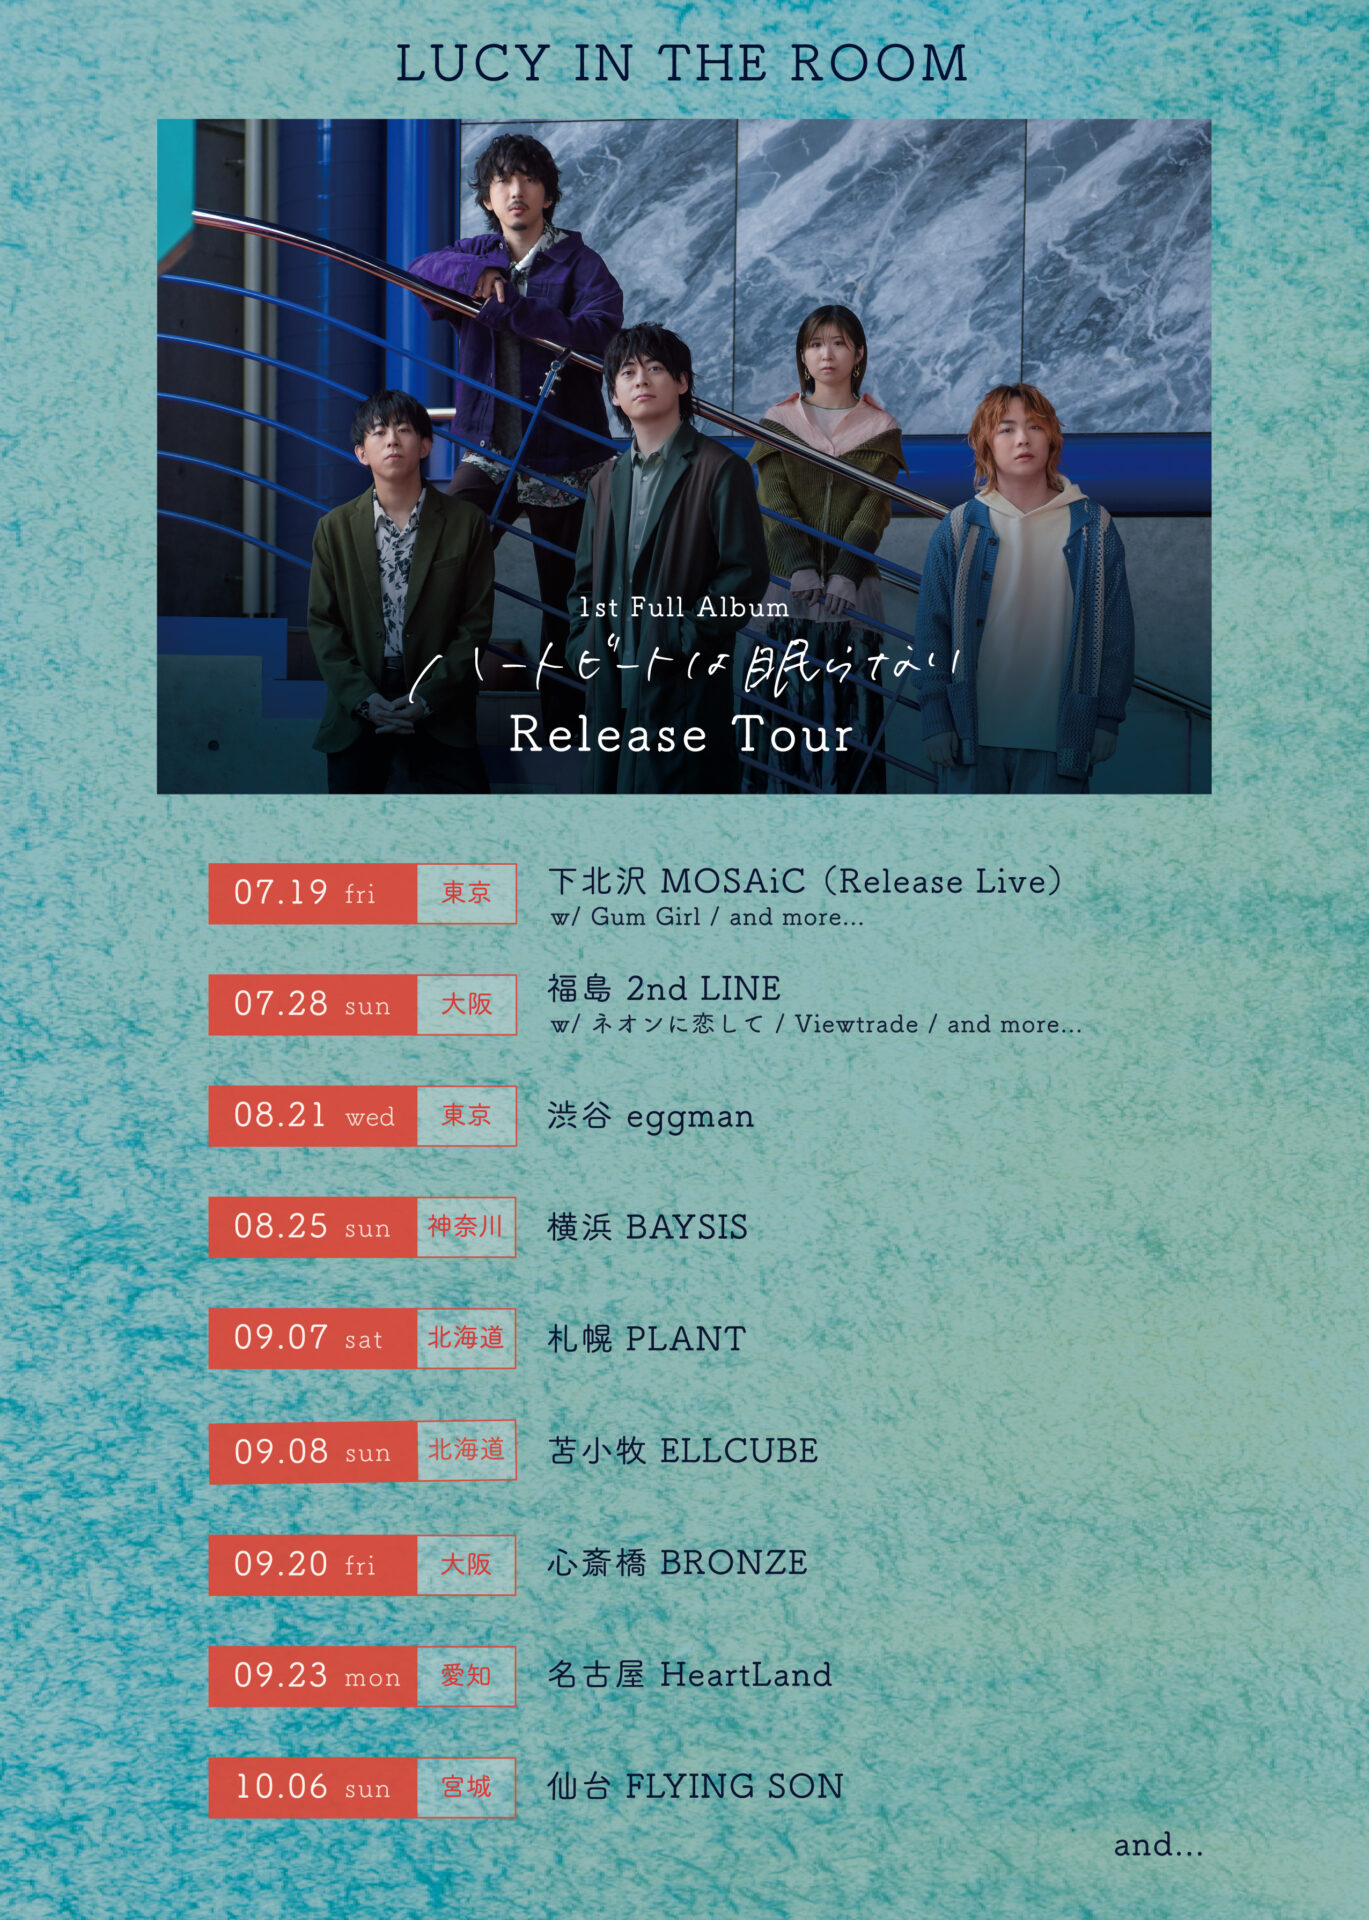 ○1st Full Album「ハートビートは眠らない」Release Tour○ - LUCY IN 